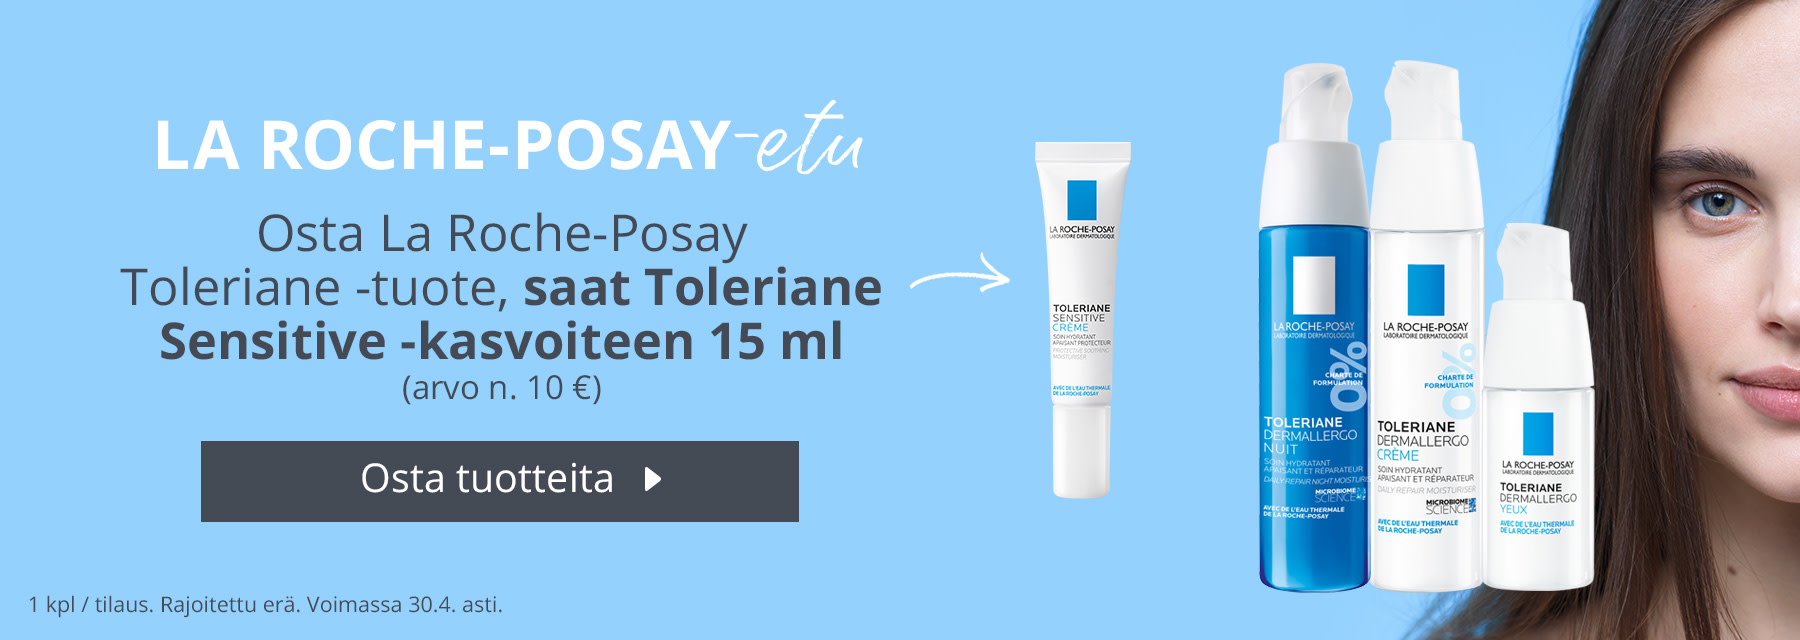 Huhtikuun kampanja | Osta La Roche-Posay Toleriane -tuote, saat Toleriane Sensitive -kasvoiteen 15 ml